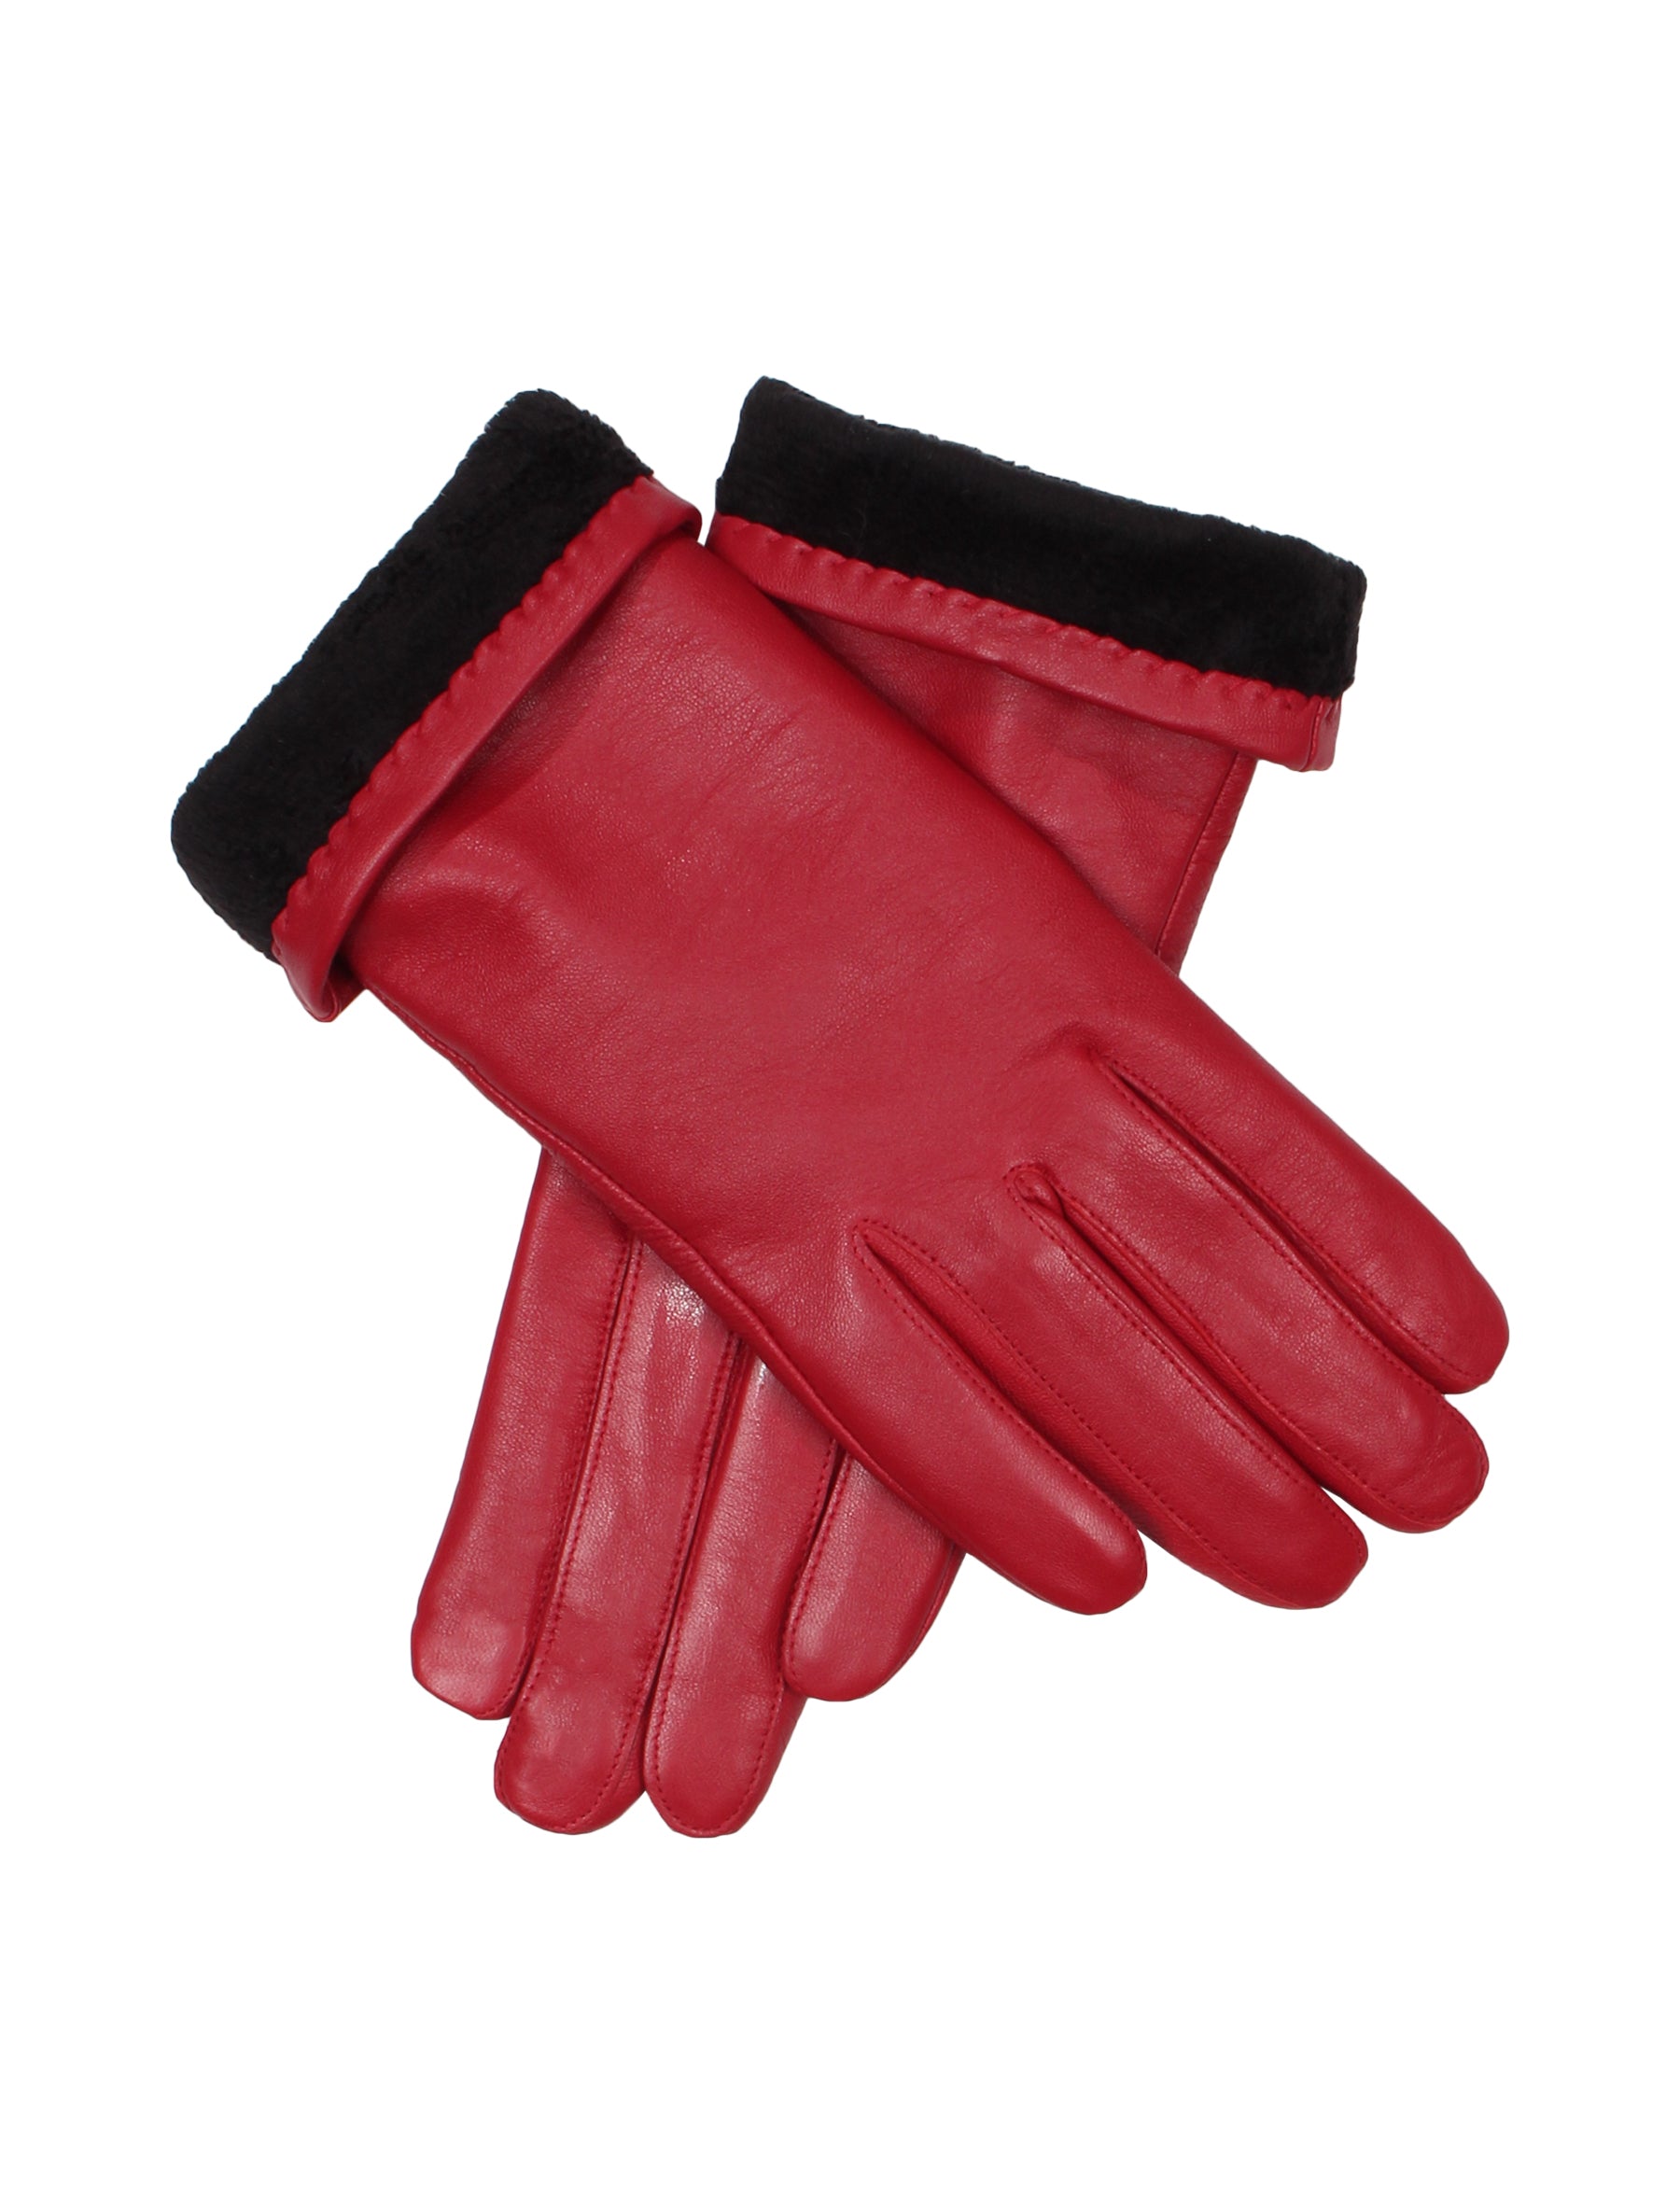 Damen Lederhandschuh von Weikert - WLE 9816 in rot